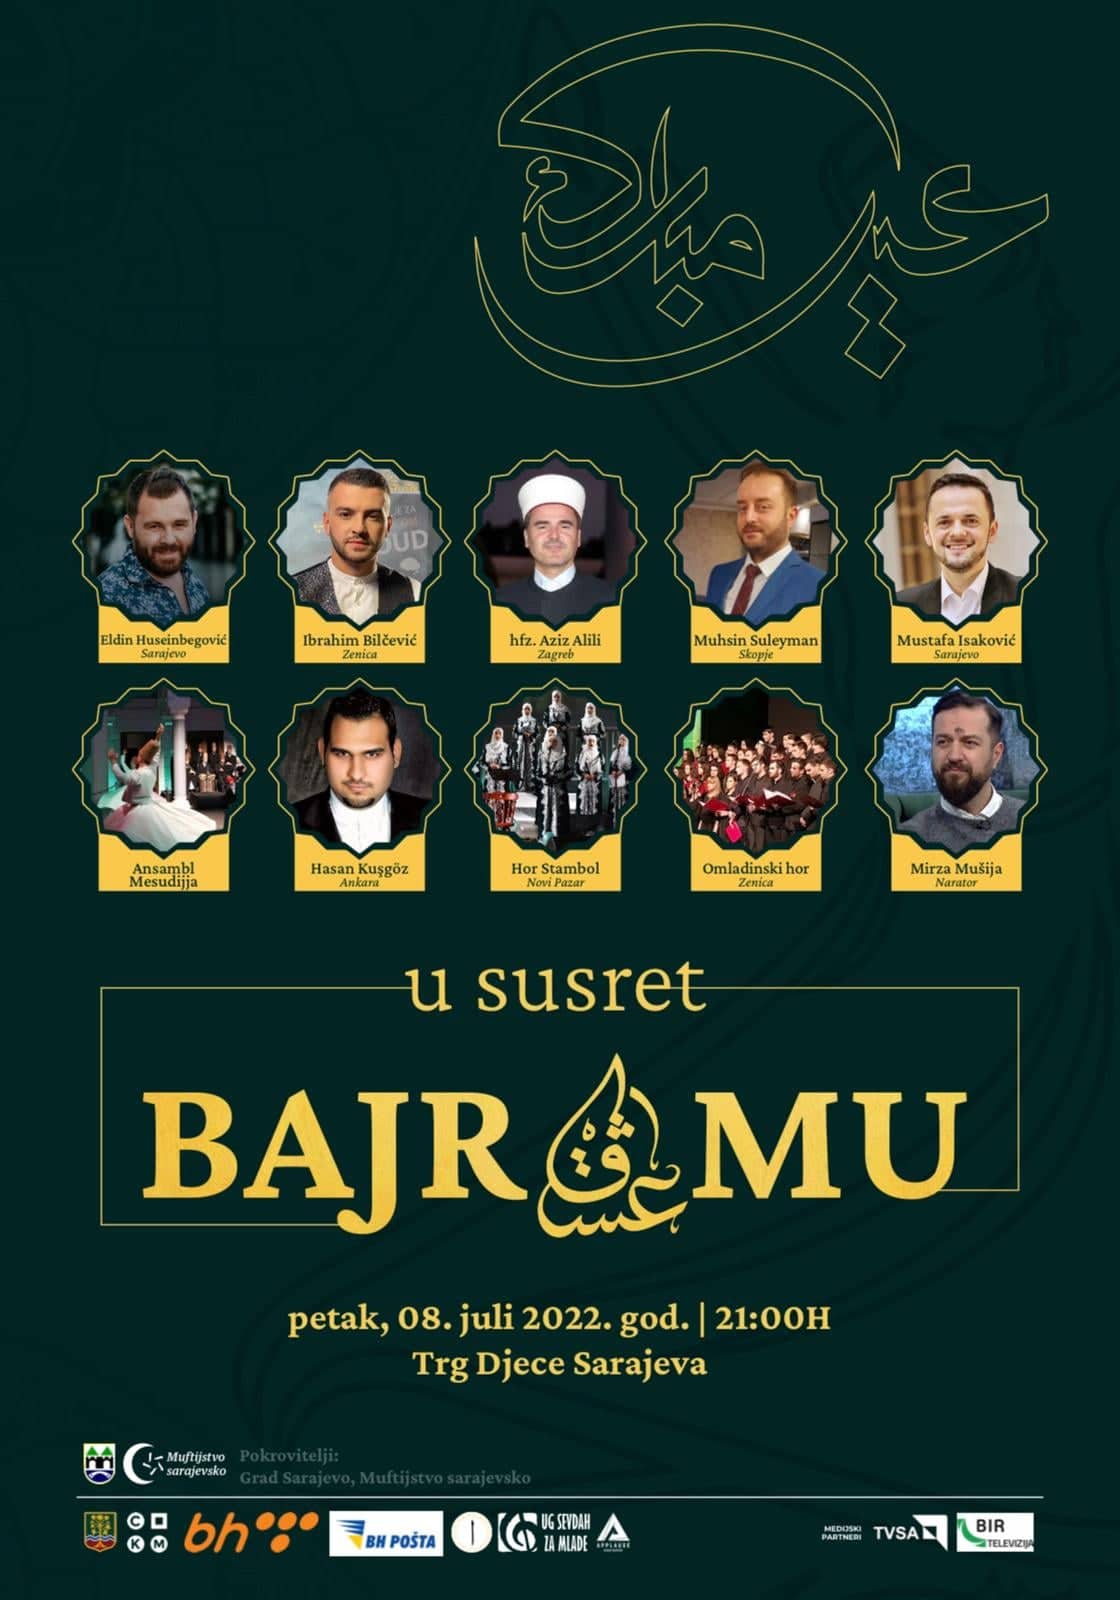 Tradicionalni koncert “U susret bajramu” 8. jula na Trgu Djece Sarajeva